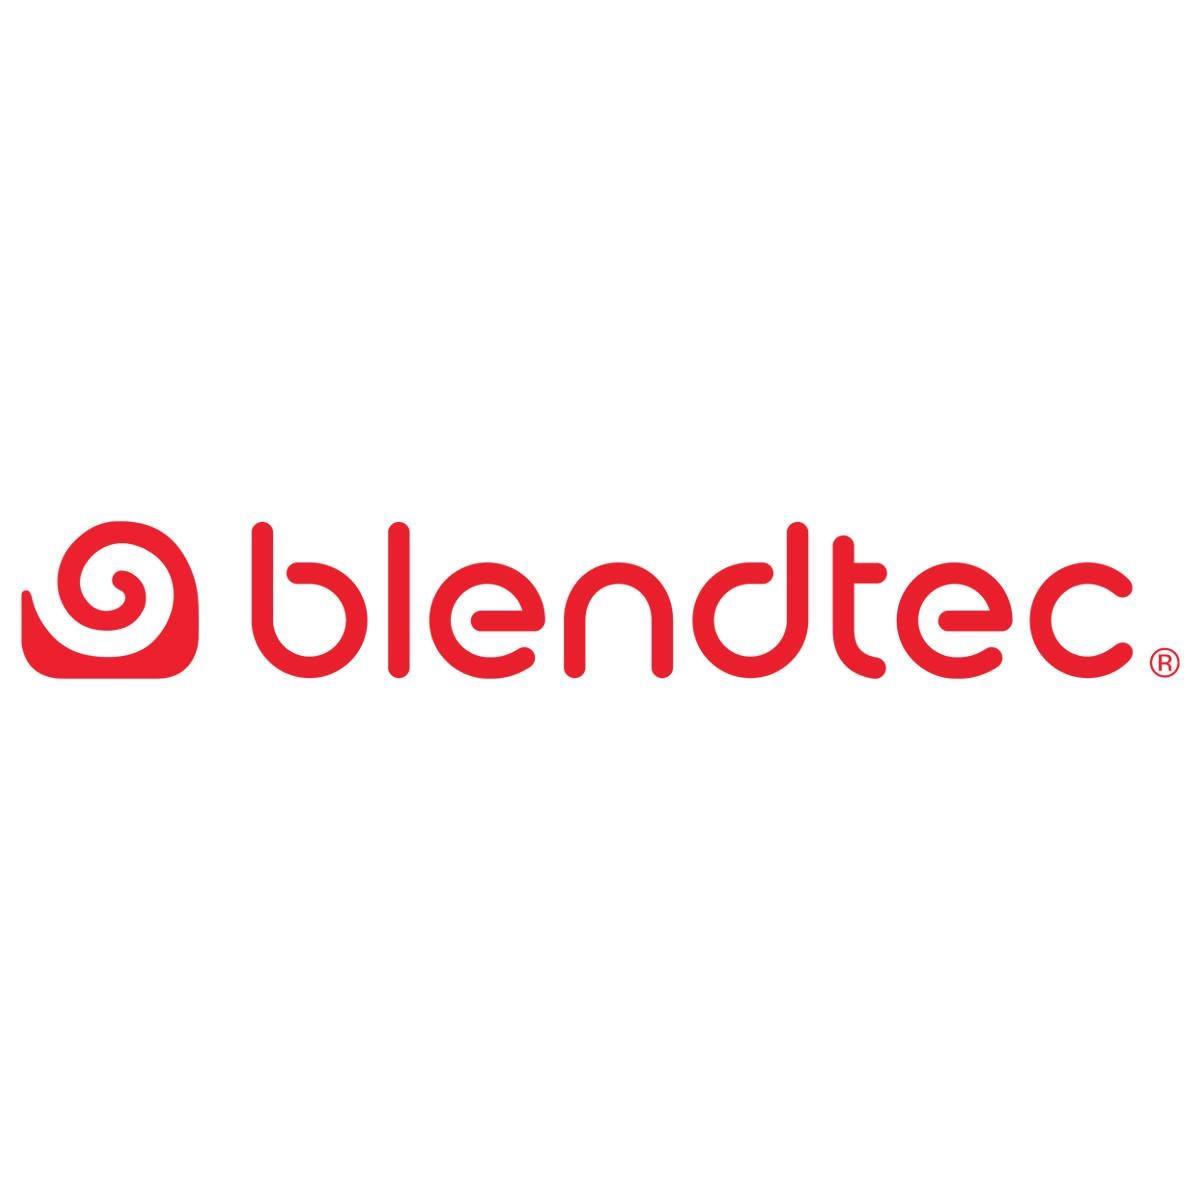 Blendtec, blender, appliance, home, food